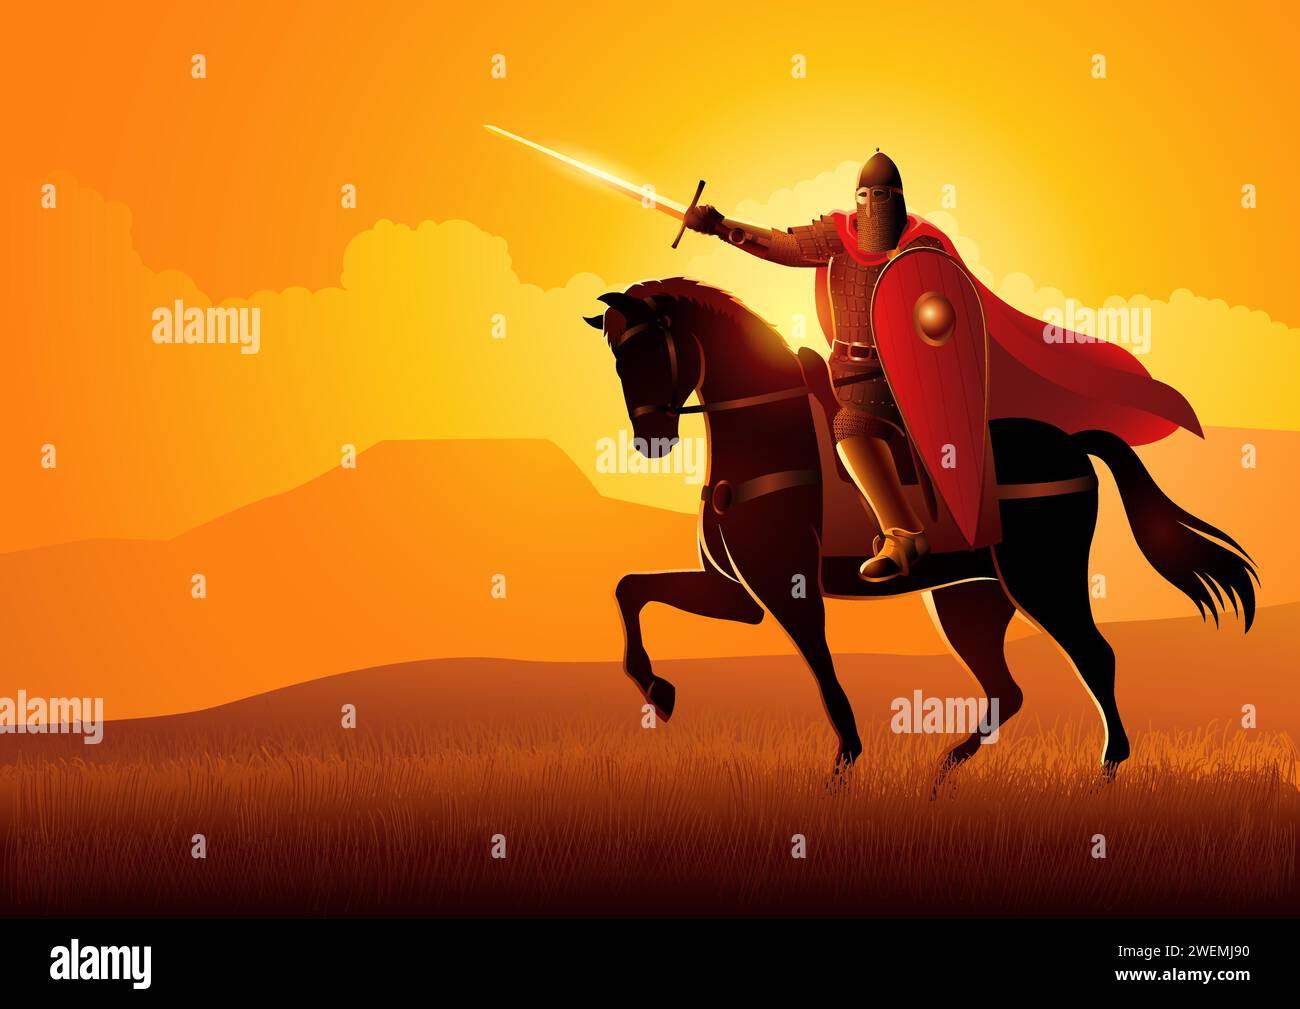 Vector illustration of medieval Slavic knight on horseback Stock Vector